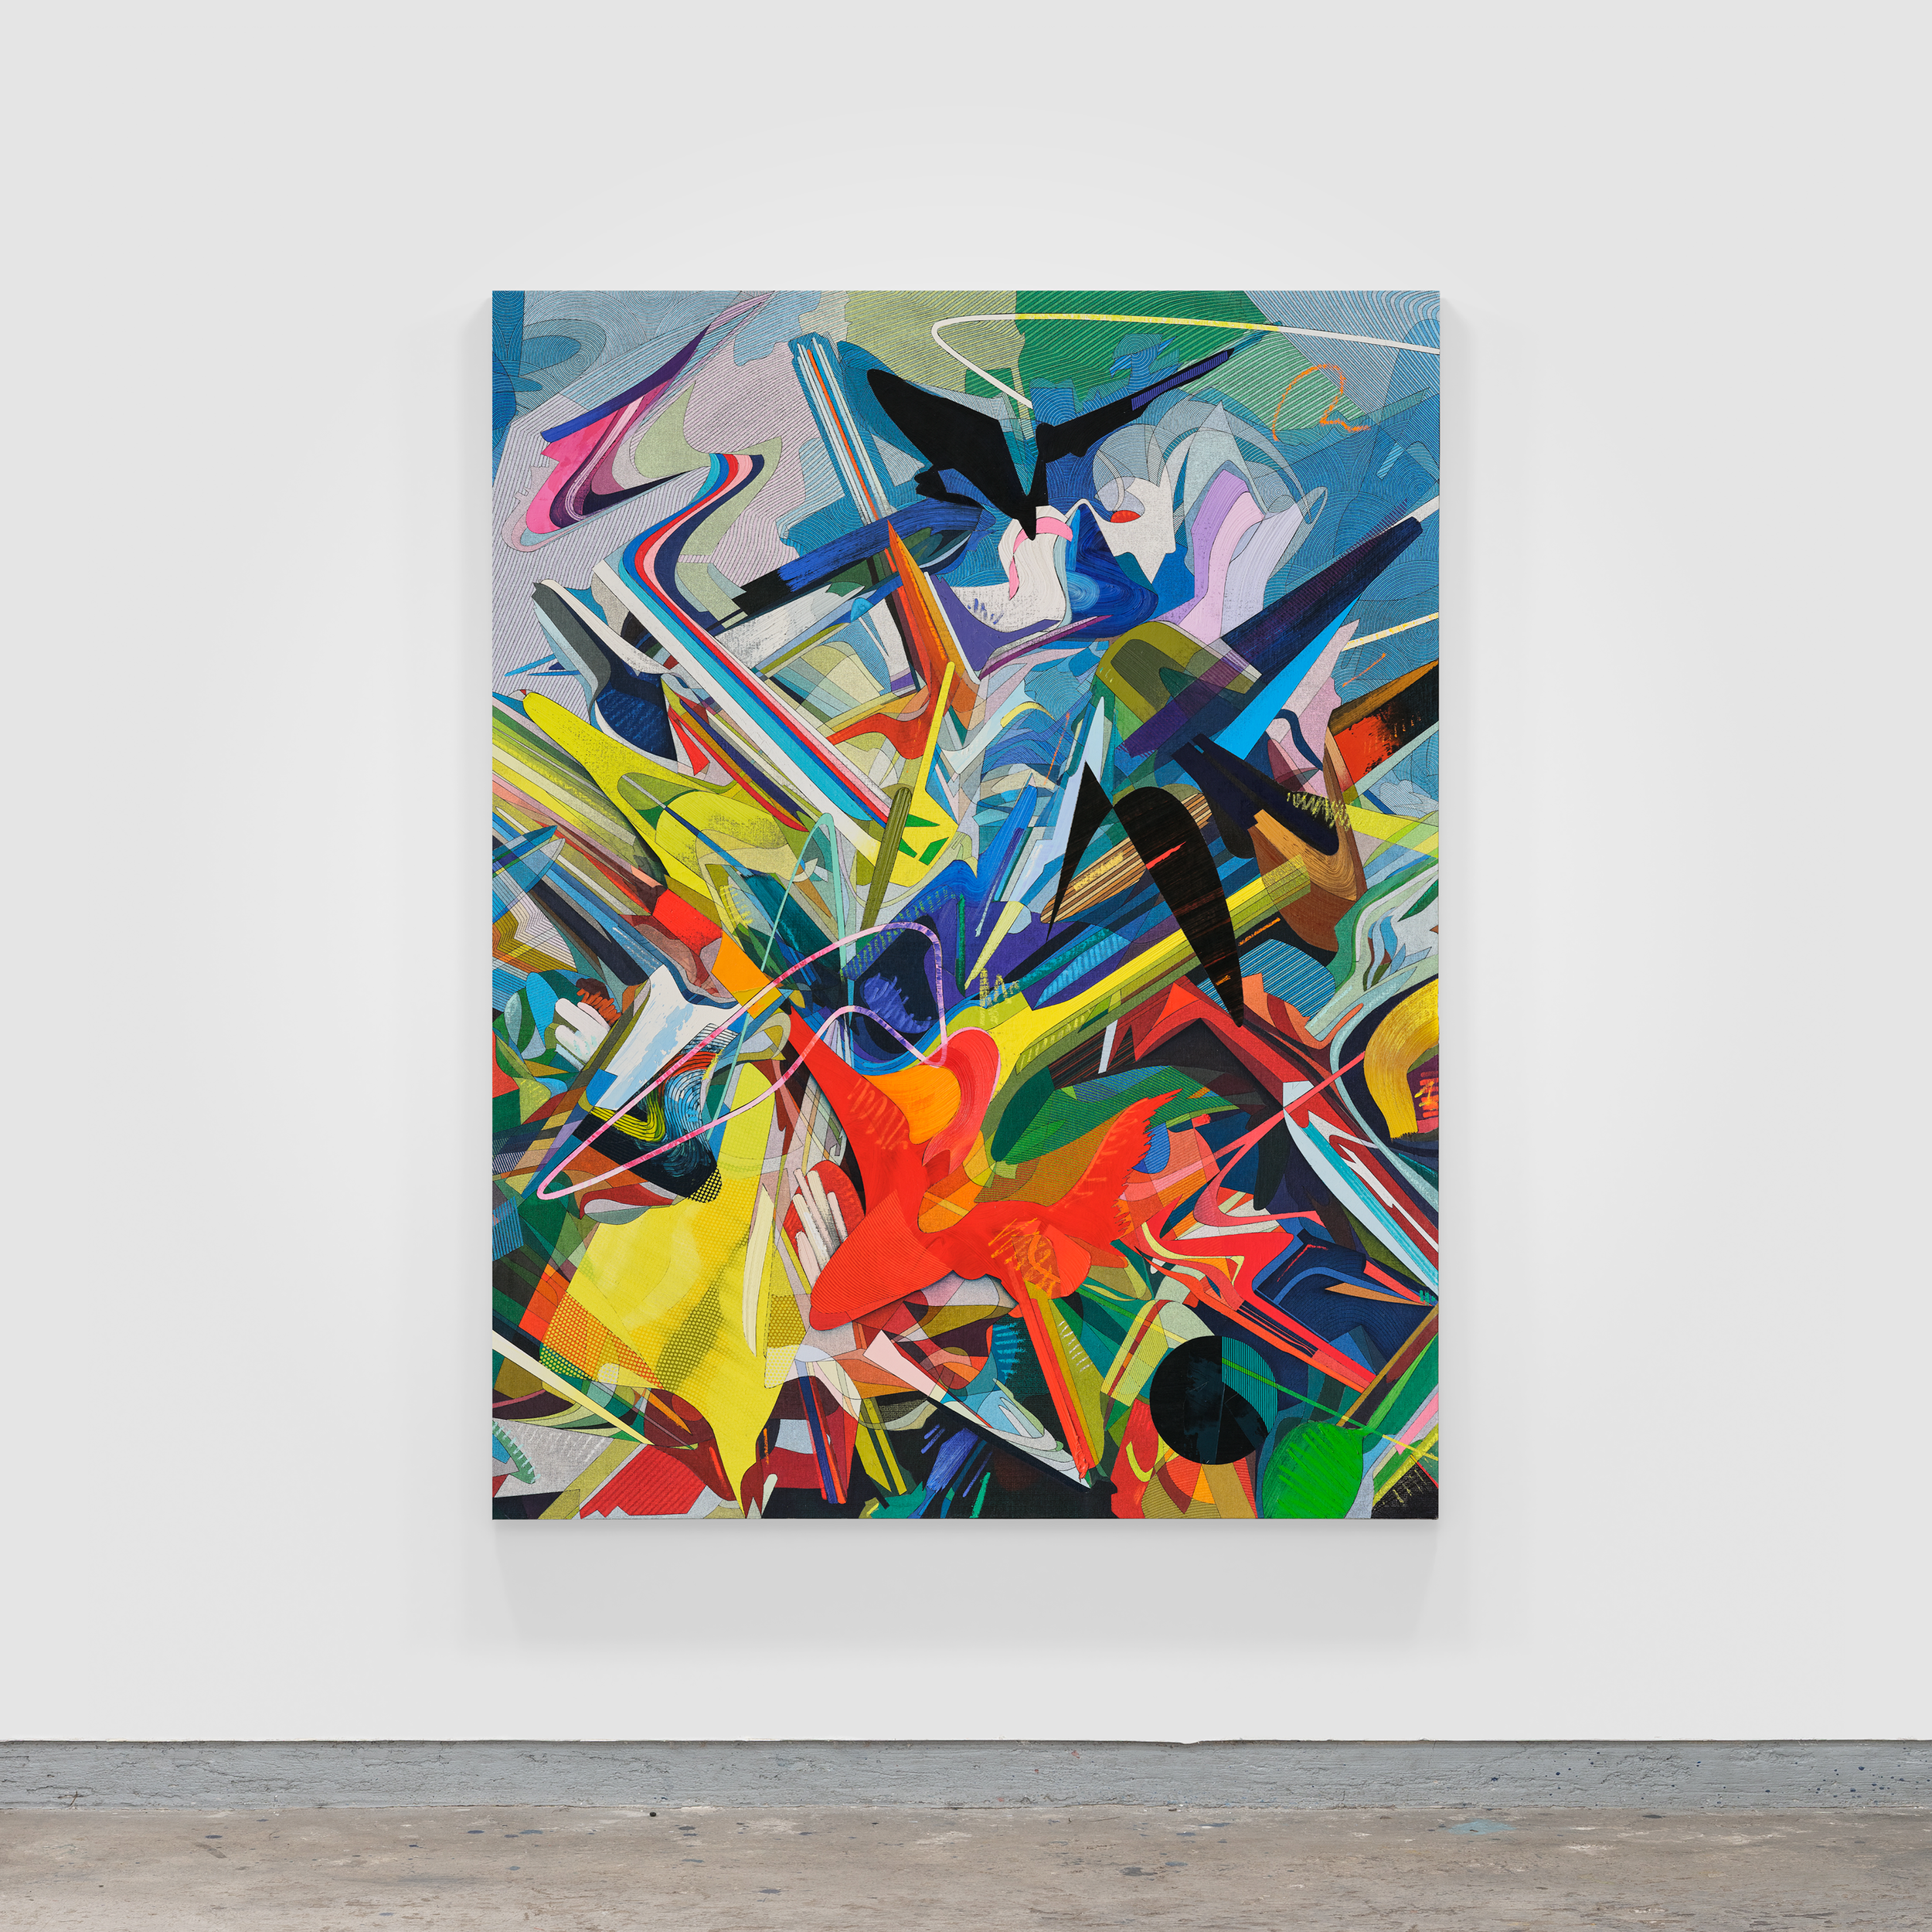 El-Color-detras-del-Velo,-Atlantico,-Oil-&-Acrylic-on-Linen-mounted-on-Panel,-220-x-170-cm-2022-by-Omar-Rodriguez-Graham-(6).png